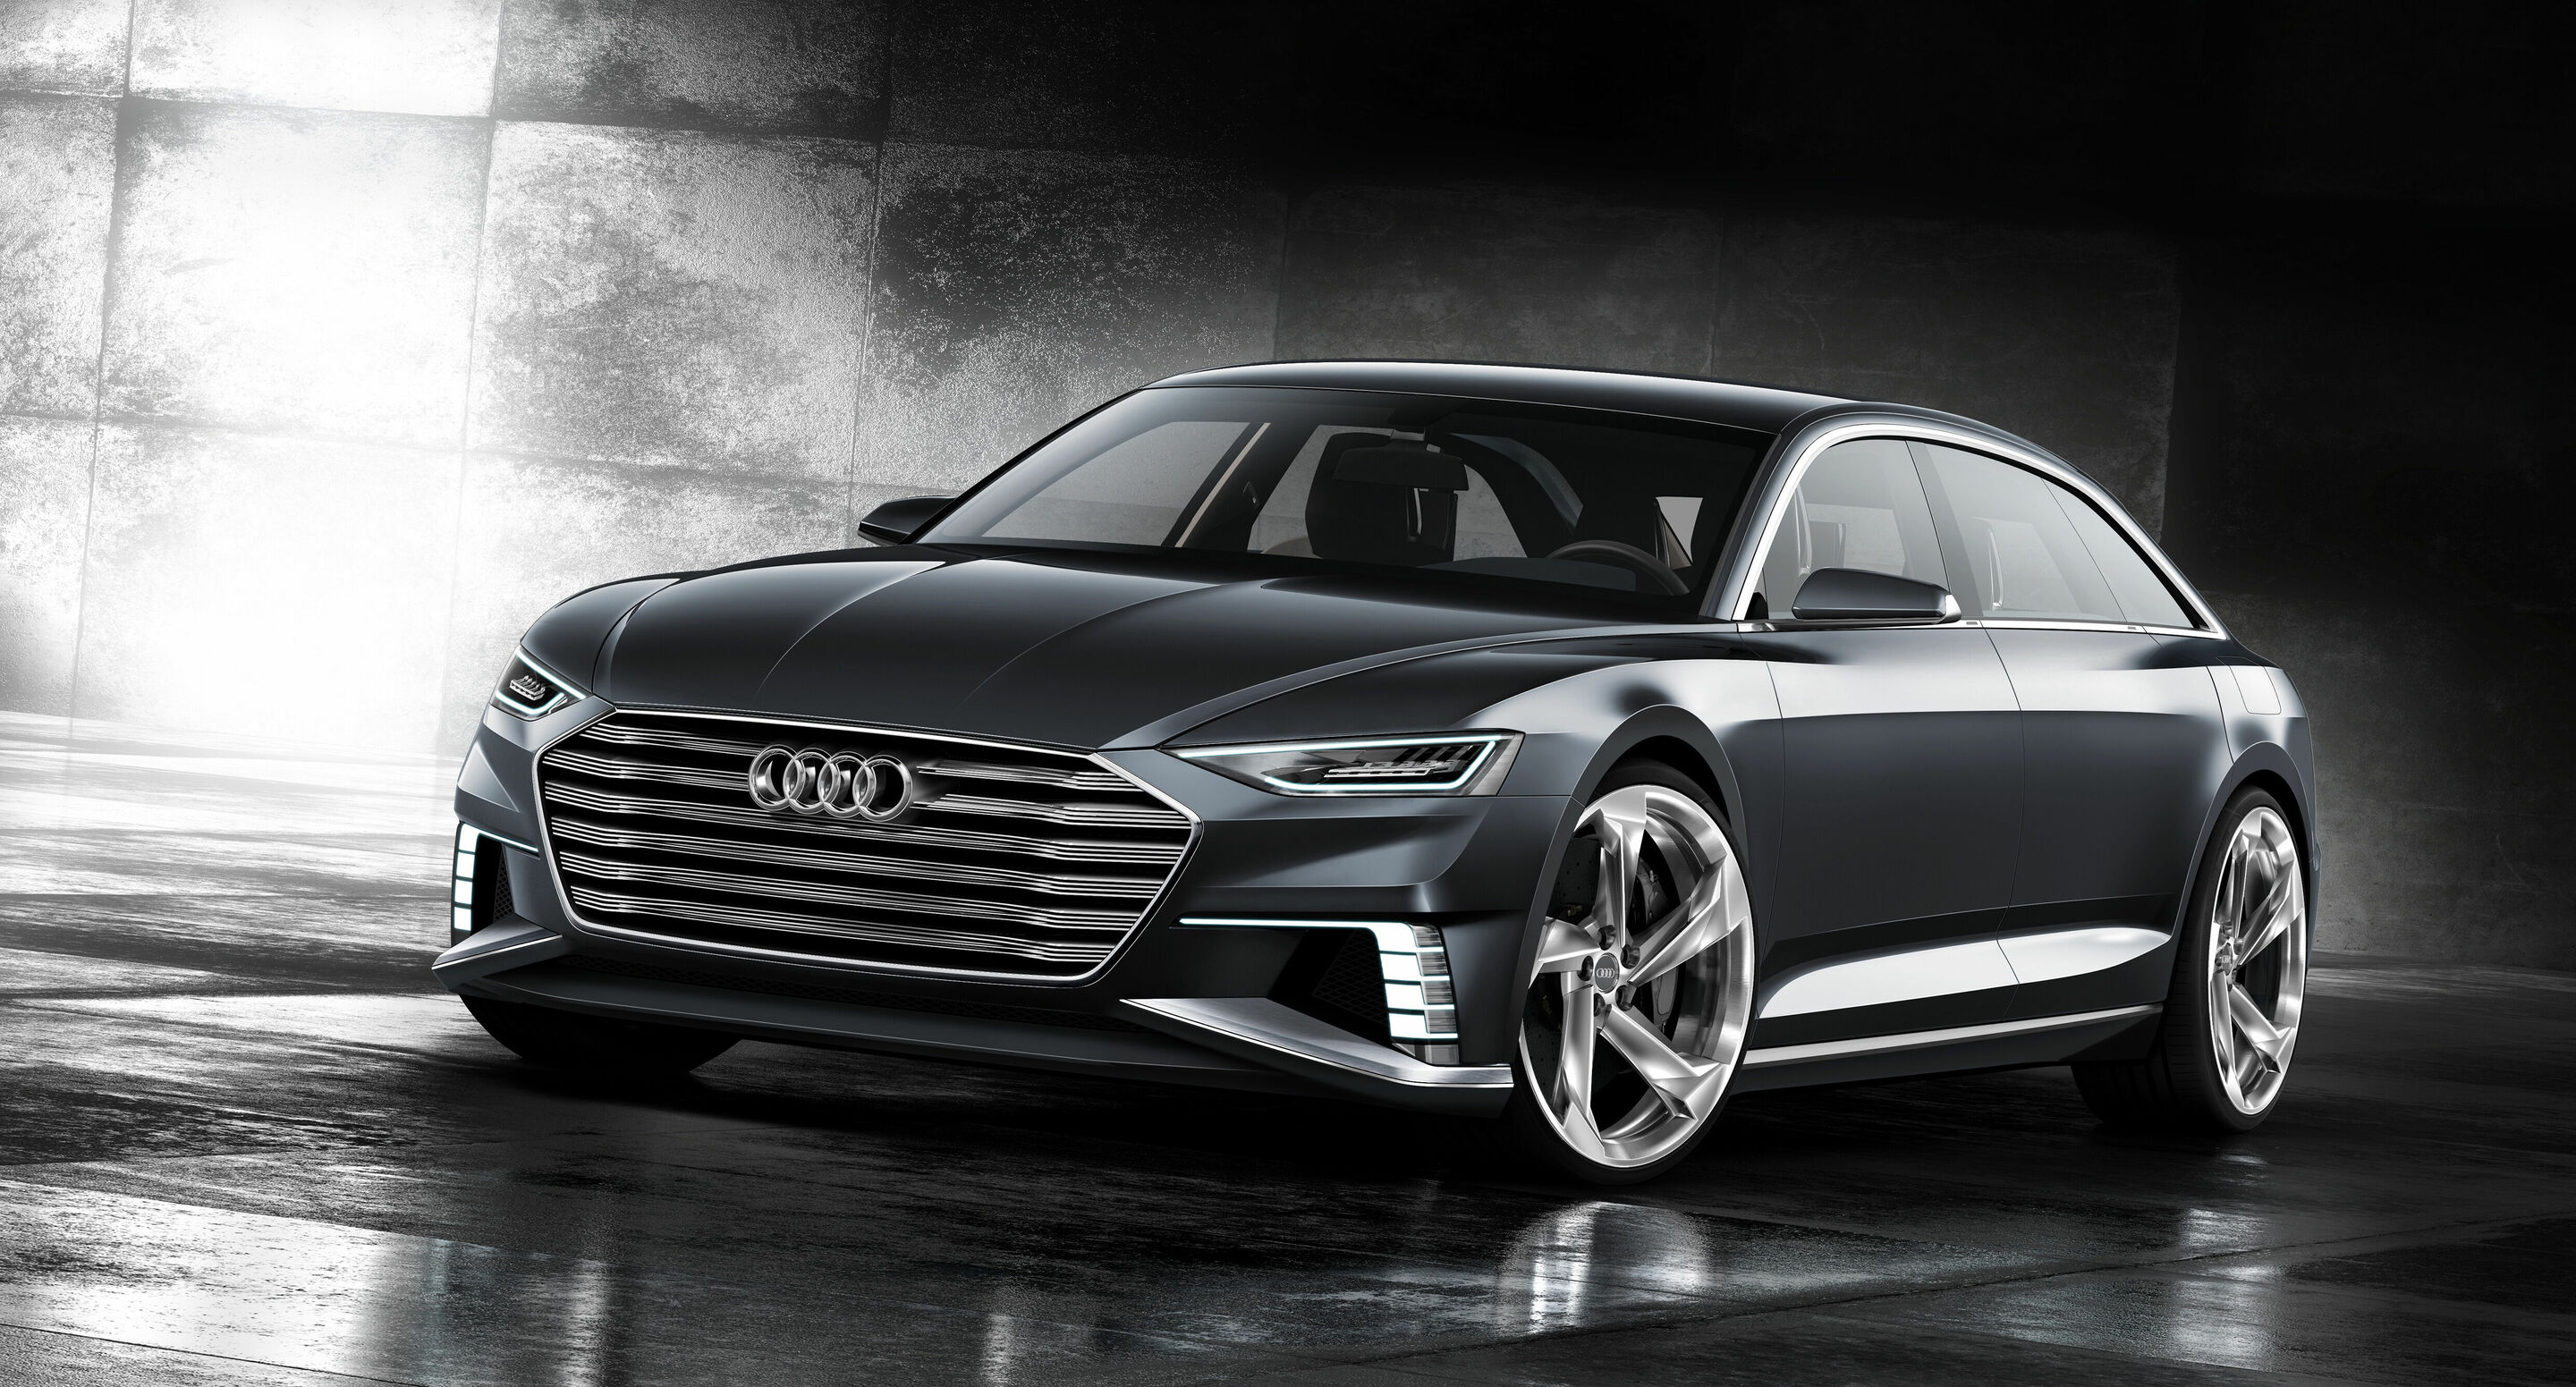 Sportlich-elegant, vielseitig und vernetzt – das Showcar Audi